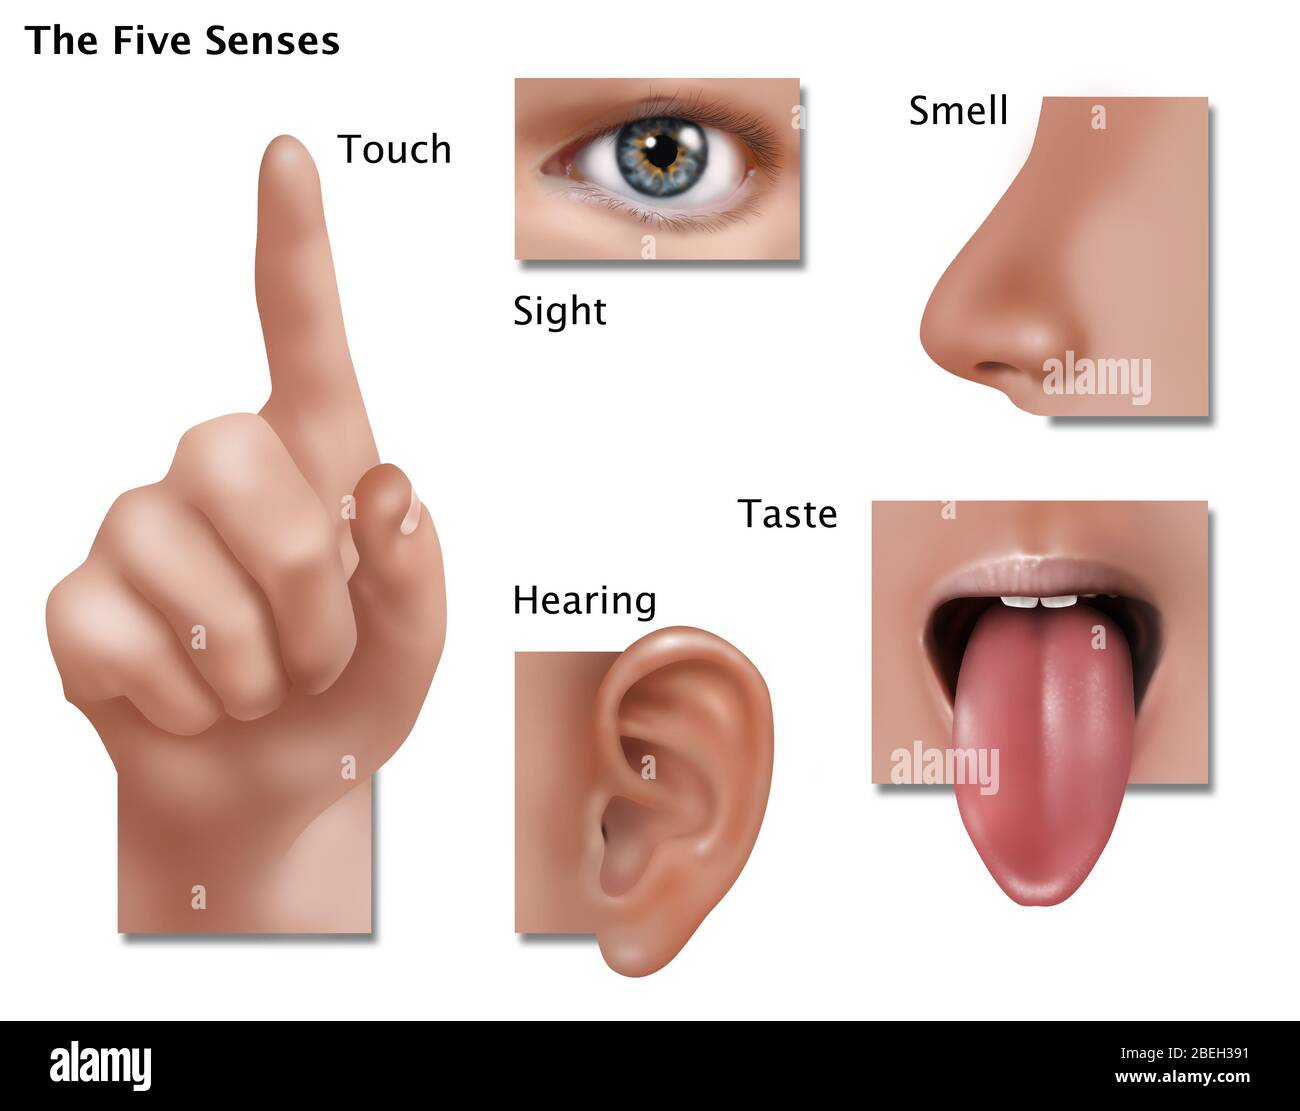 Une illustration montrant les cinq sens : le toucher, la vue, l'odorat, le goût, et de l'ouïe. Banque D'Images